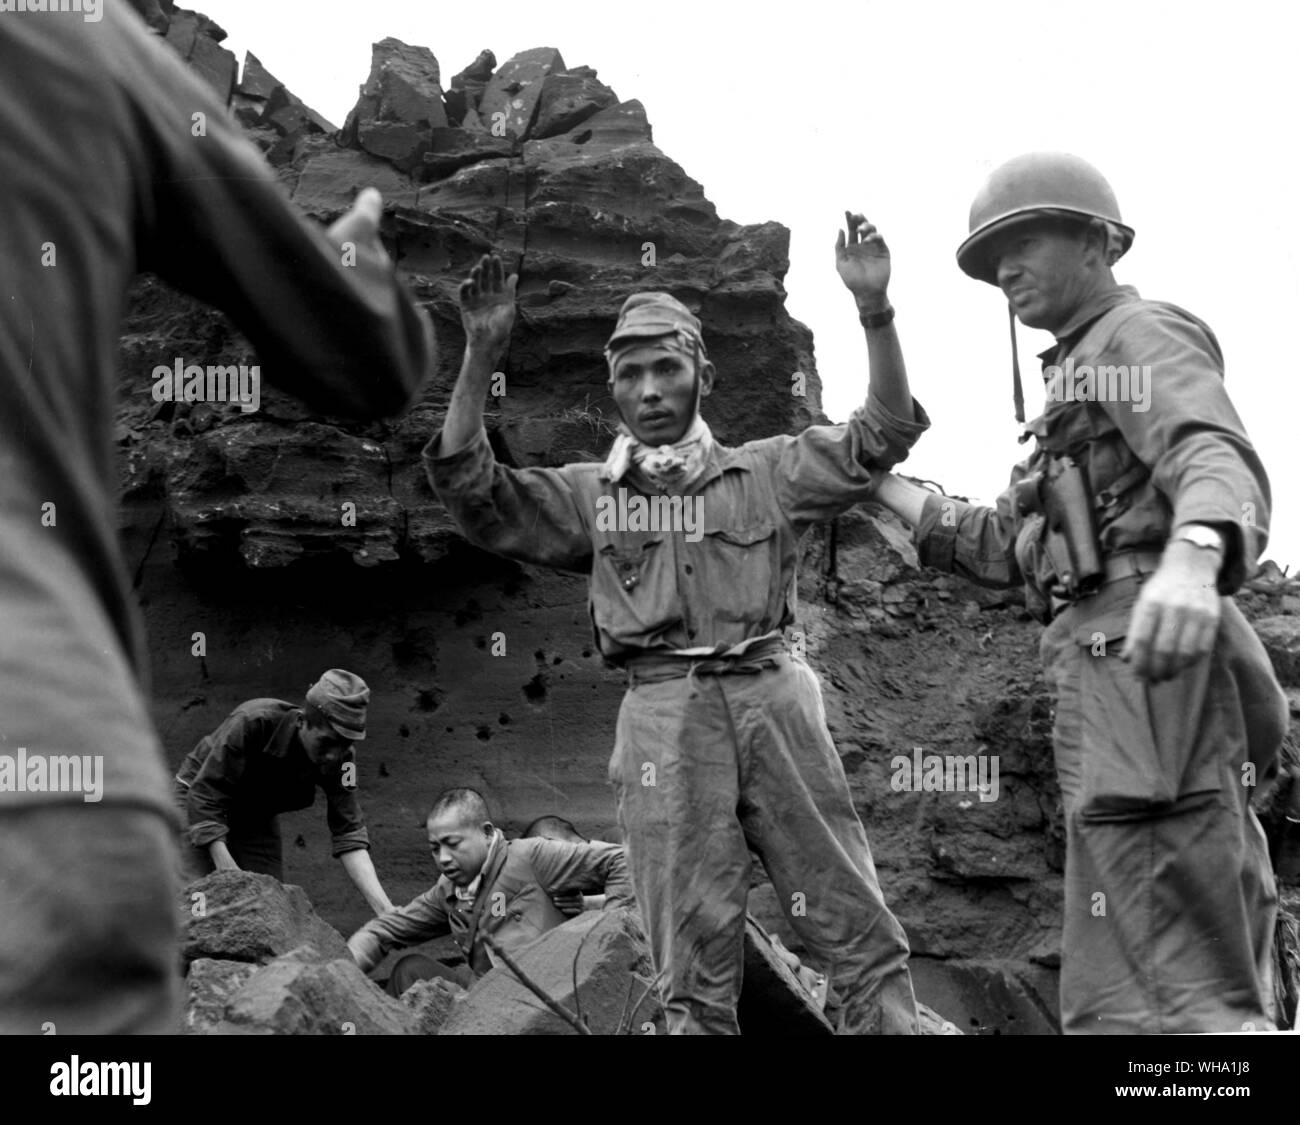 WW2 : un soldat japonais capturés. Capturées à partir de l'Iwo Jima grotte où, avec vingt autres Japs, ils s'était caché pendant plusieurs jours. Ils ont été traités avec humanité, ce qui est contraire à ce qu'ils avaient cru avant la capture. 5 avril 1945. Banque D'Images